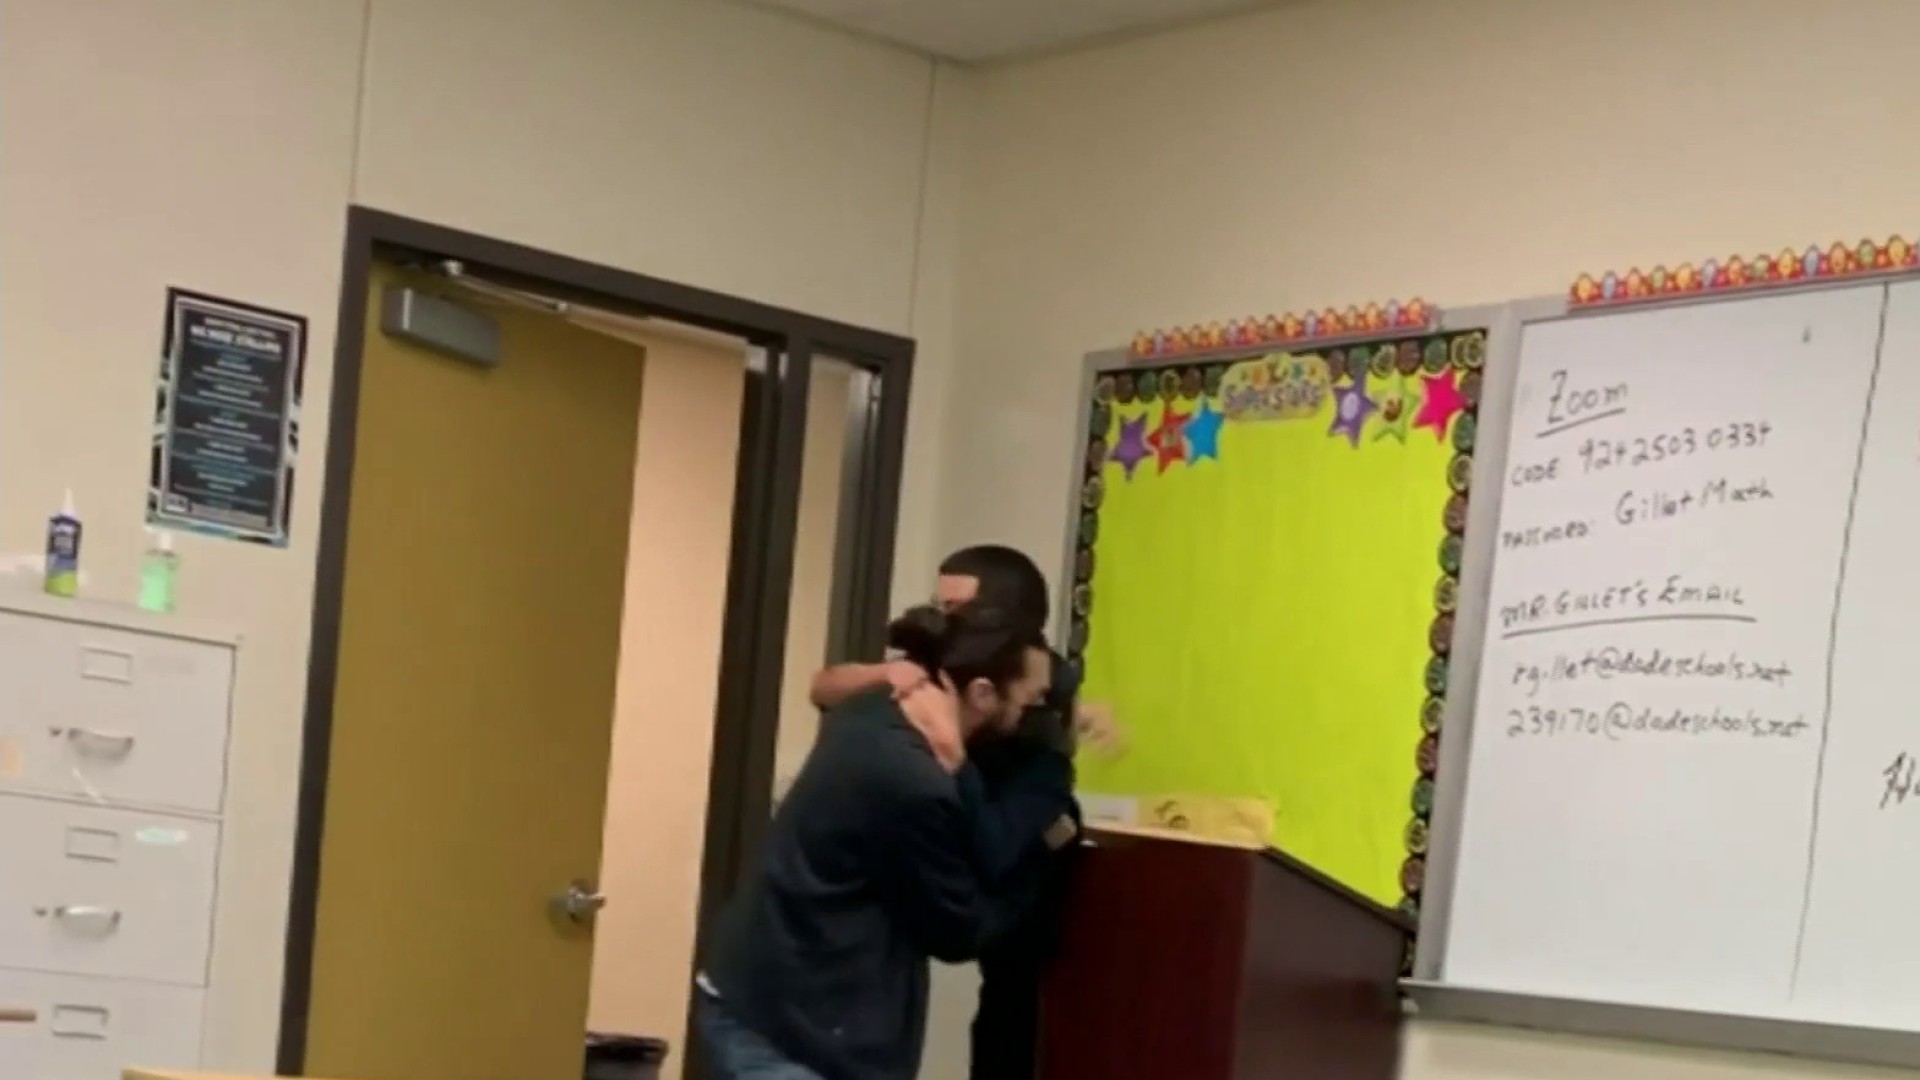 School Teacher Brazzers - Video shows Florida teacher slamming student in dispute over bathroom break